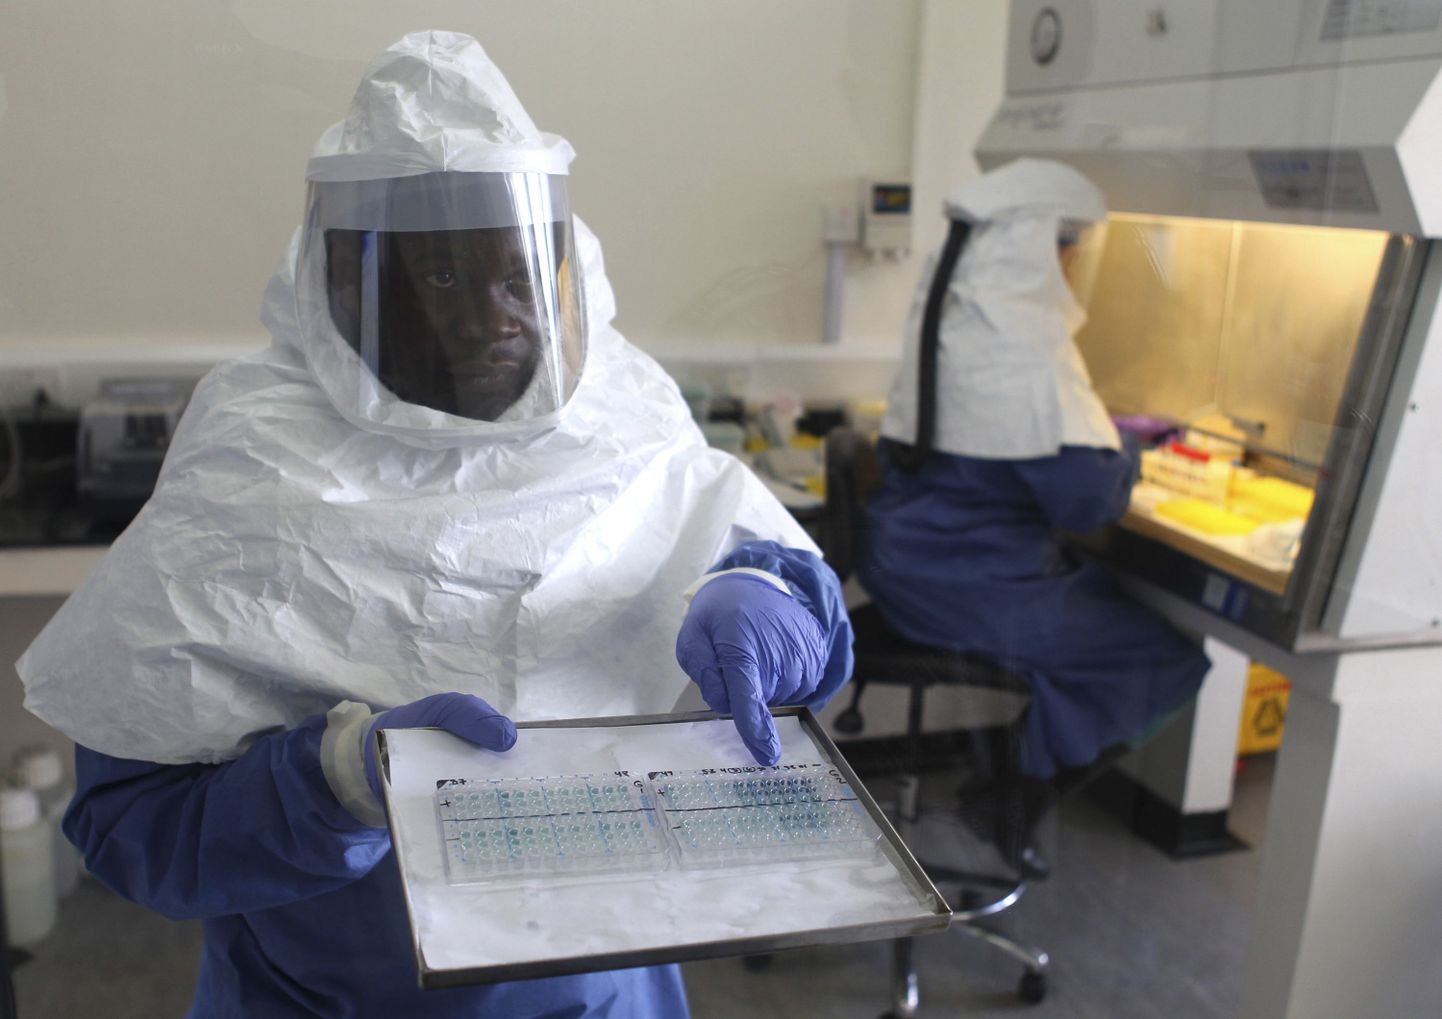 Mobiilivaras sai saagist ebola